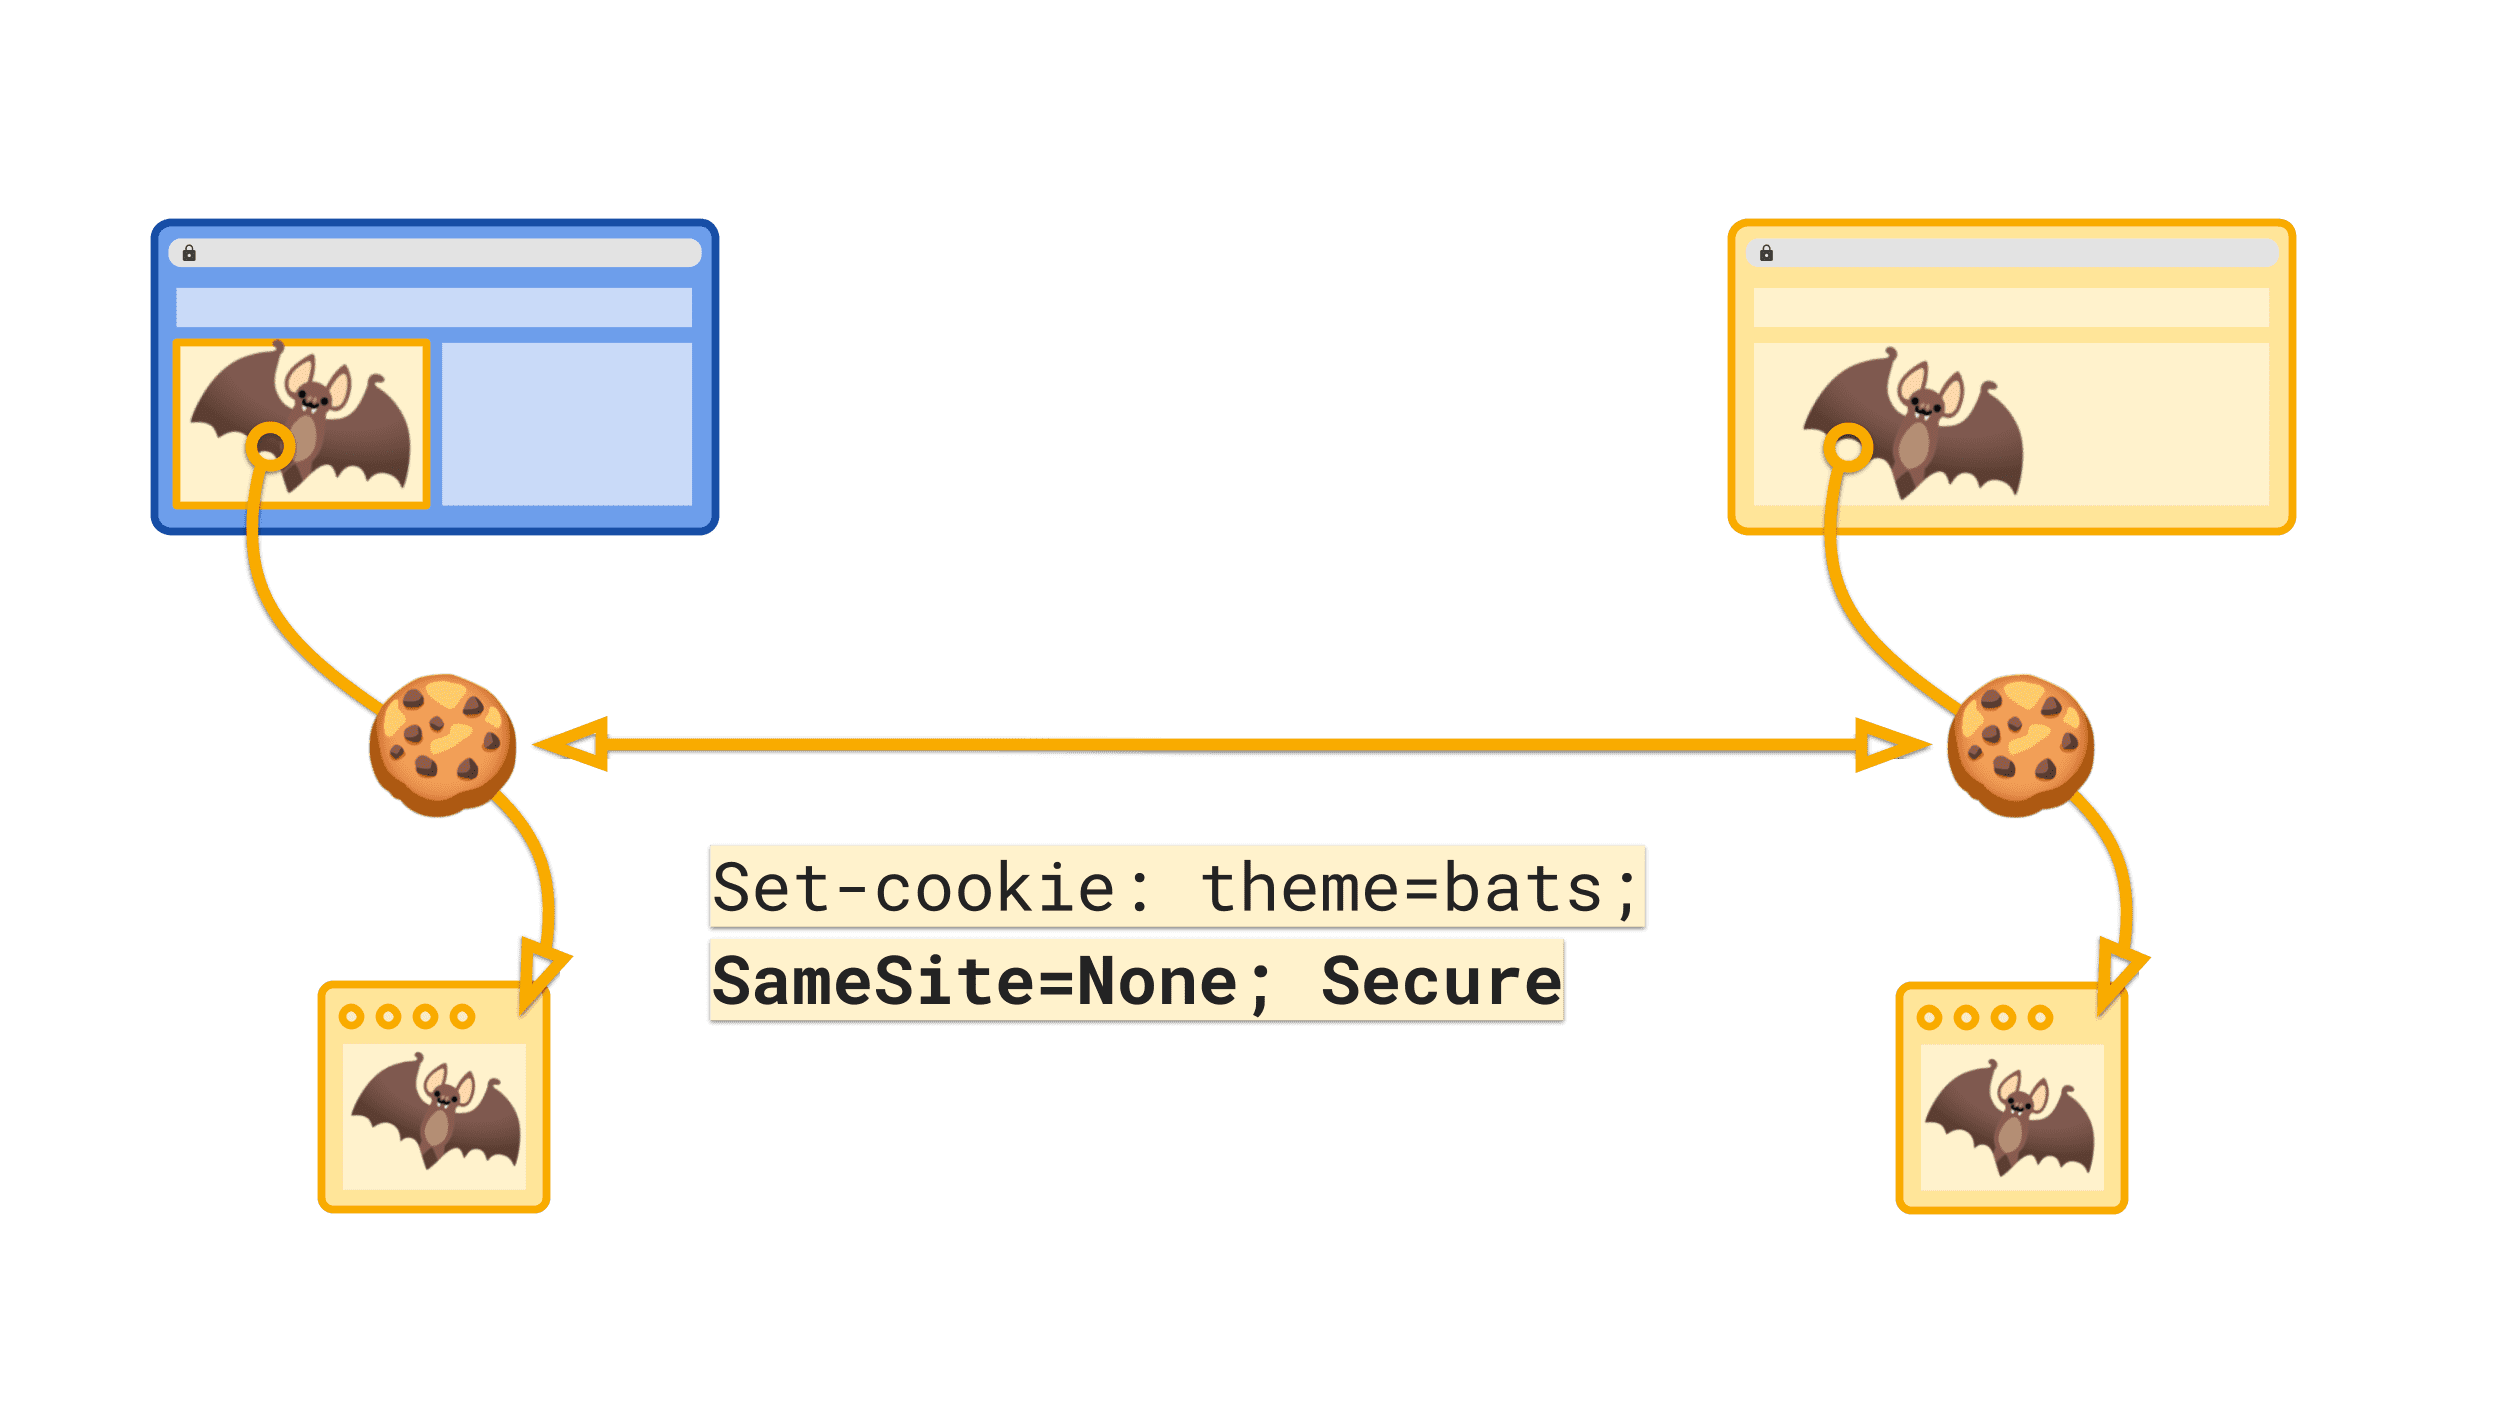 Der explizite Wert „SameSite=None“ markiert das Cookie, das in websiteübergreifenden Kontexten gesendet werden soll.